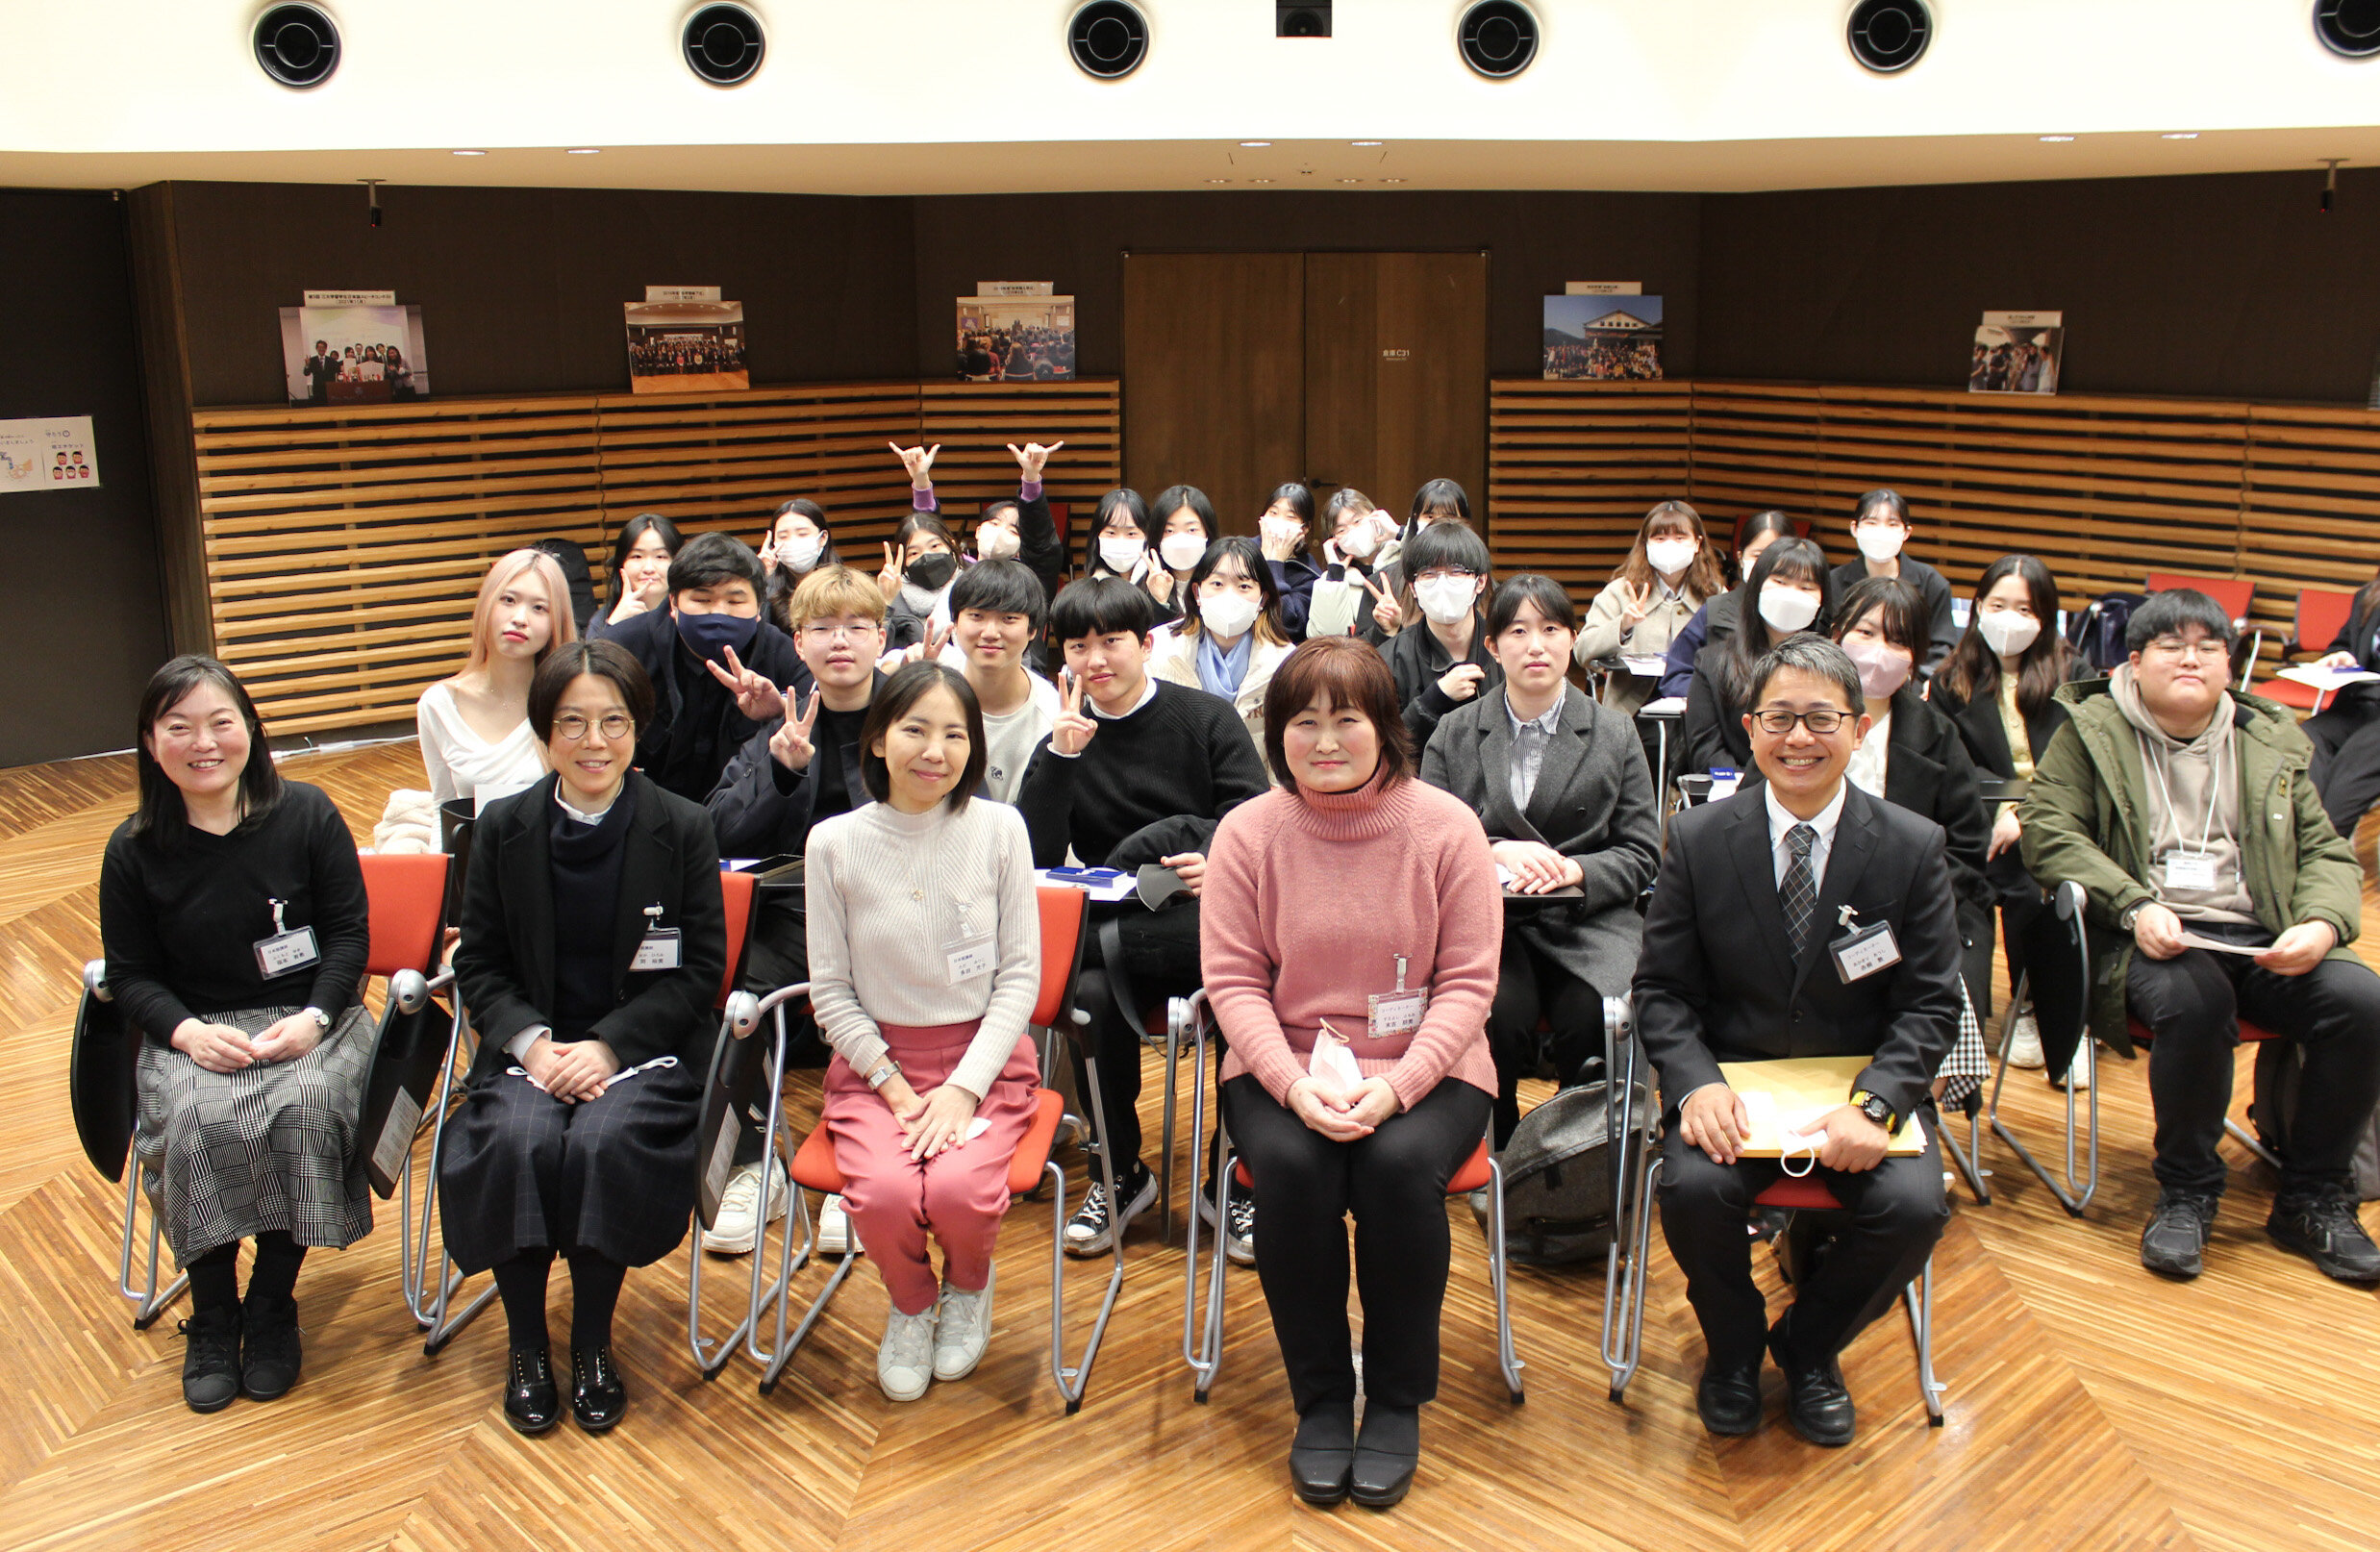 Ngày 25 tháng 2 vừa qua, kỳ học mùa đông của Khóa đào tạo ngôn ngữ ngắn hạn thuộc Chương trình giáo dục ngôn ngữ và văn hóa Nhật Bản đã kết thúc.